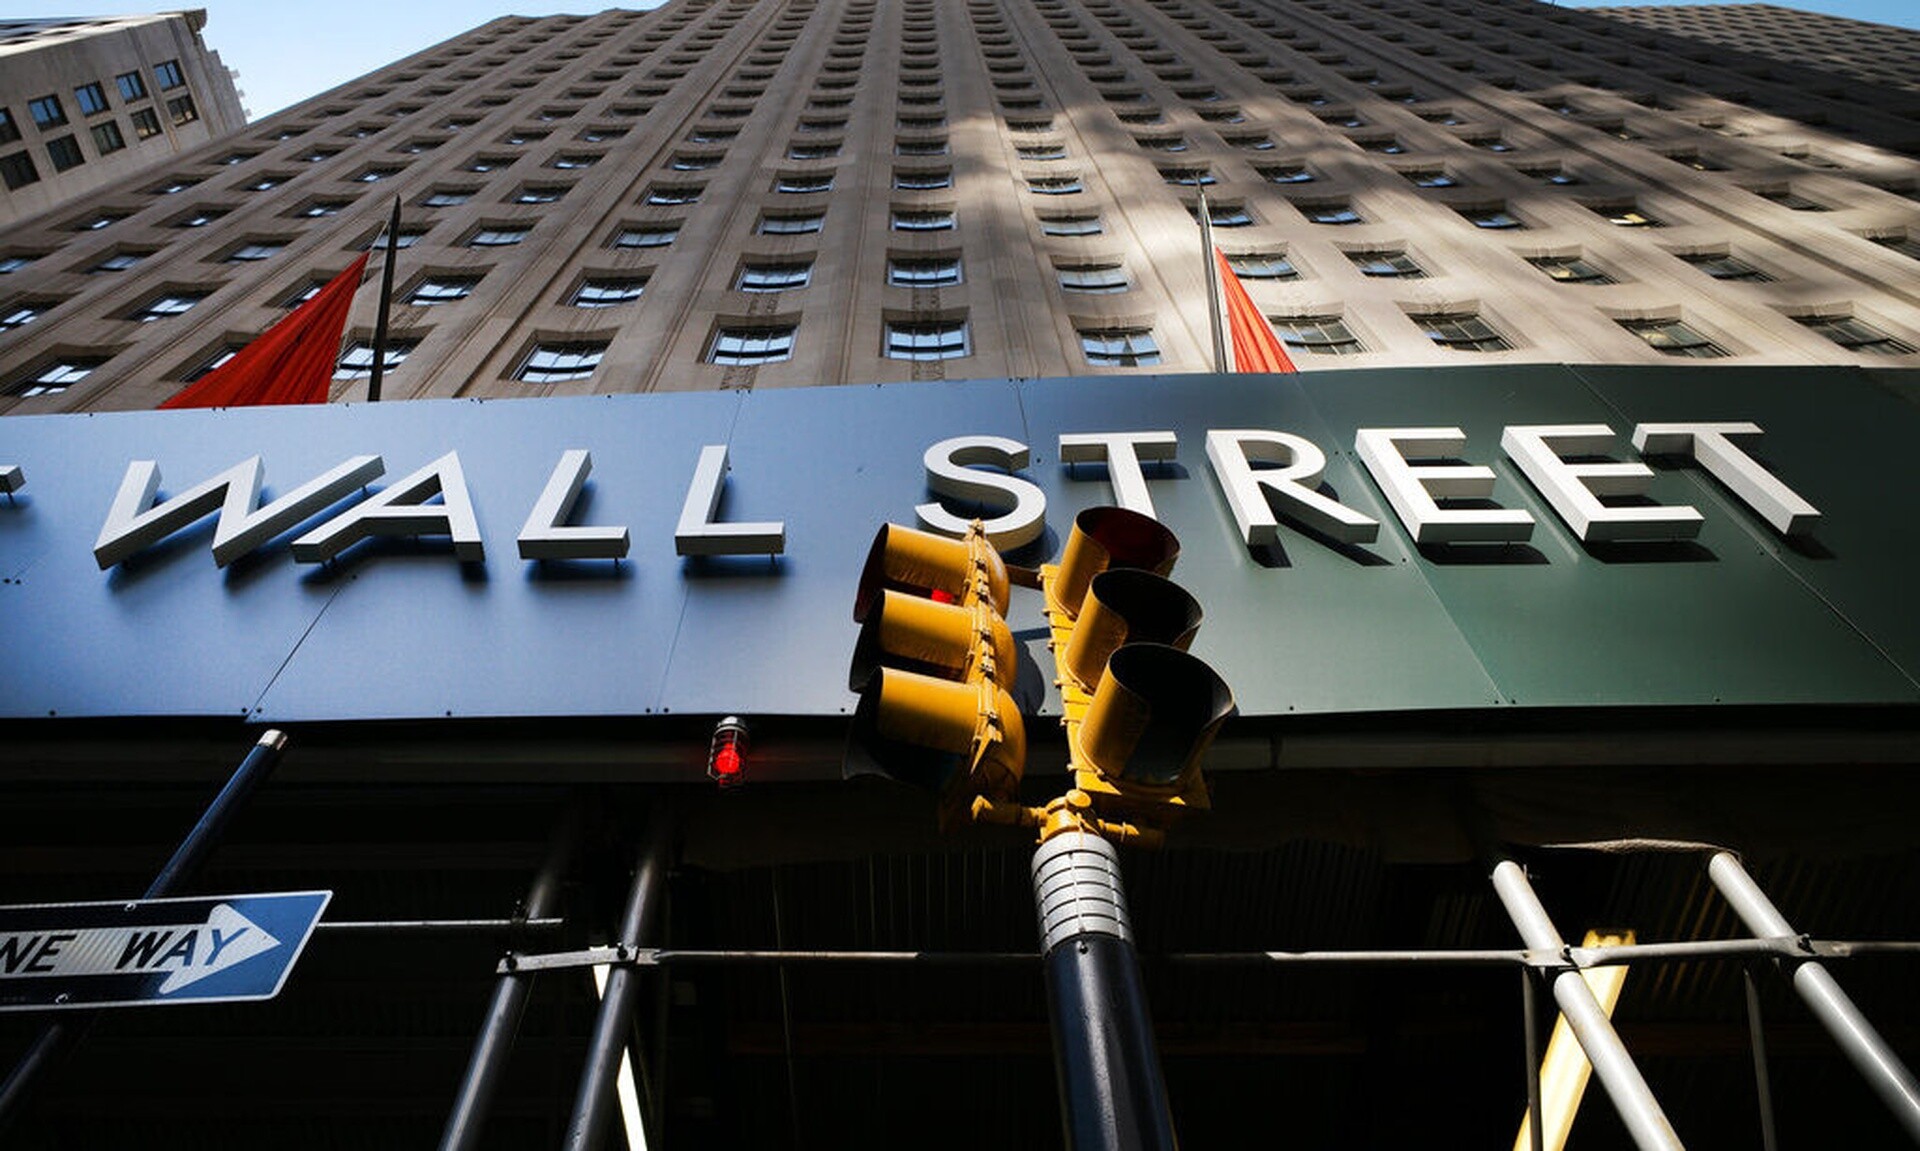 Wall Street: Ιστορικό ρεκόρ σημείωσε ο Nasdaq